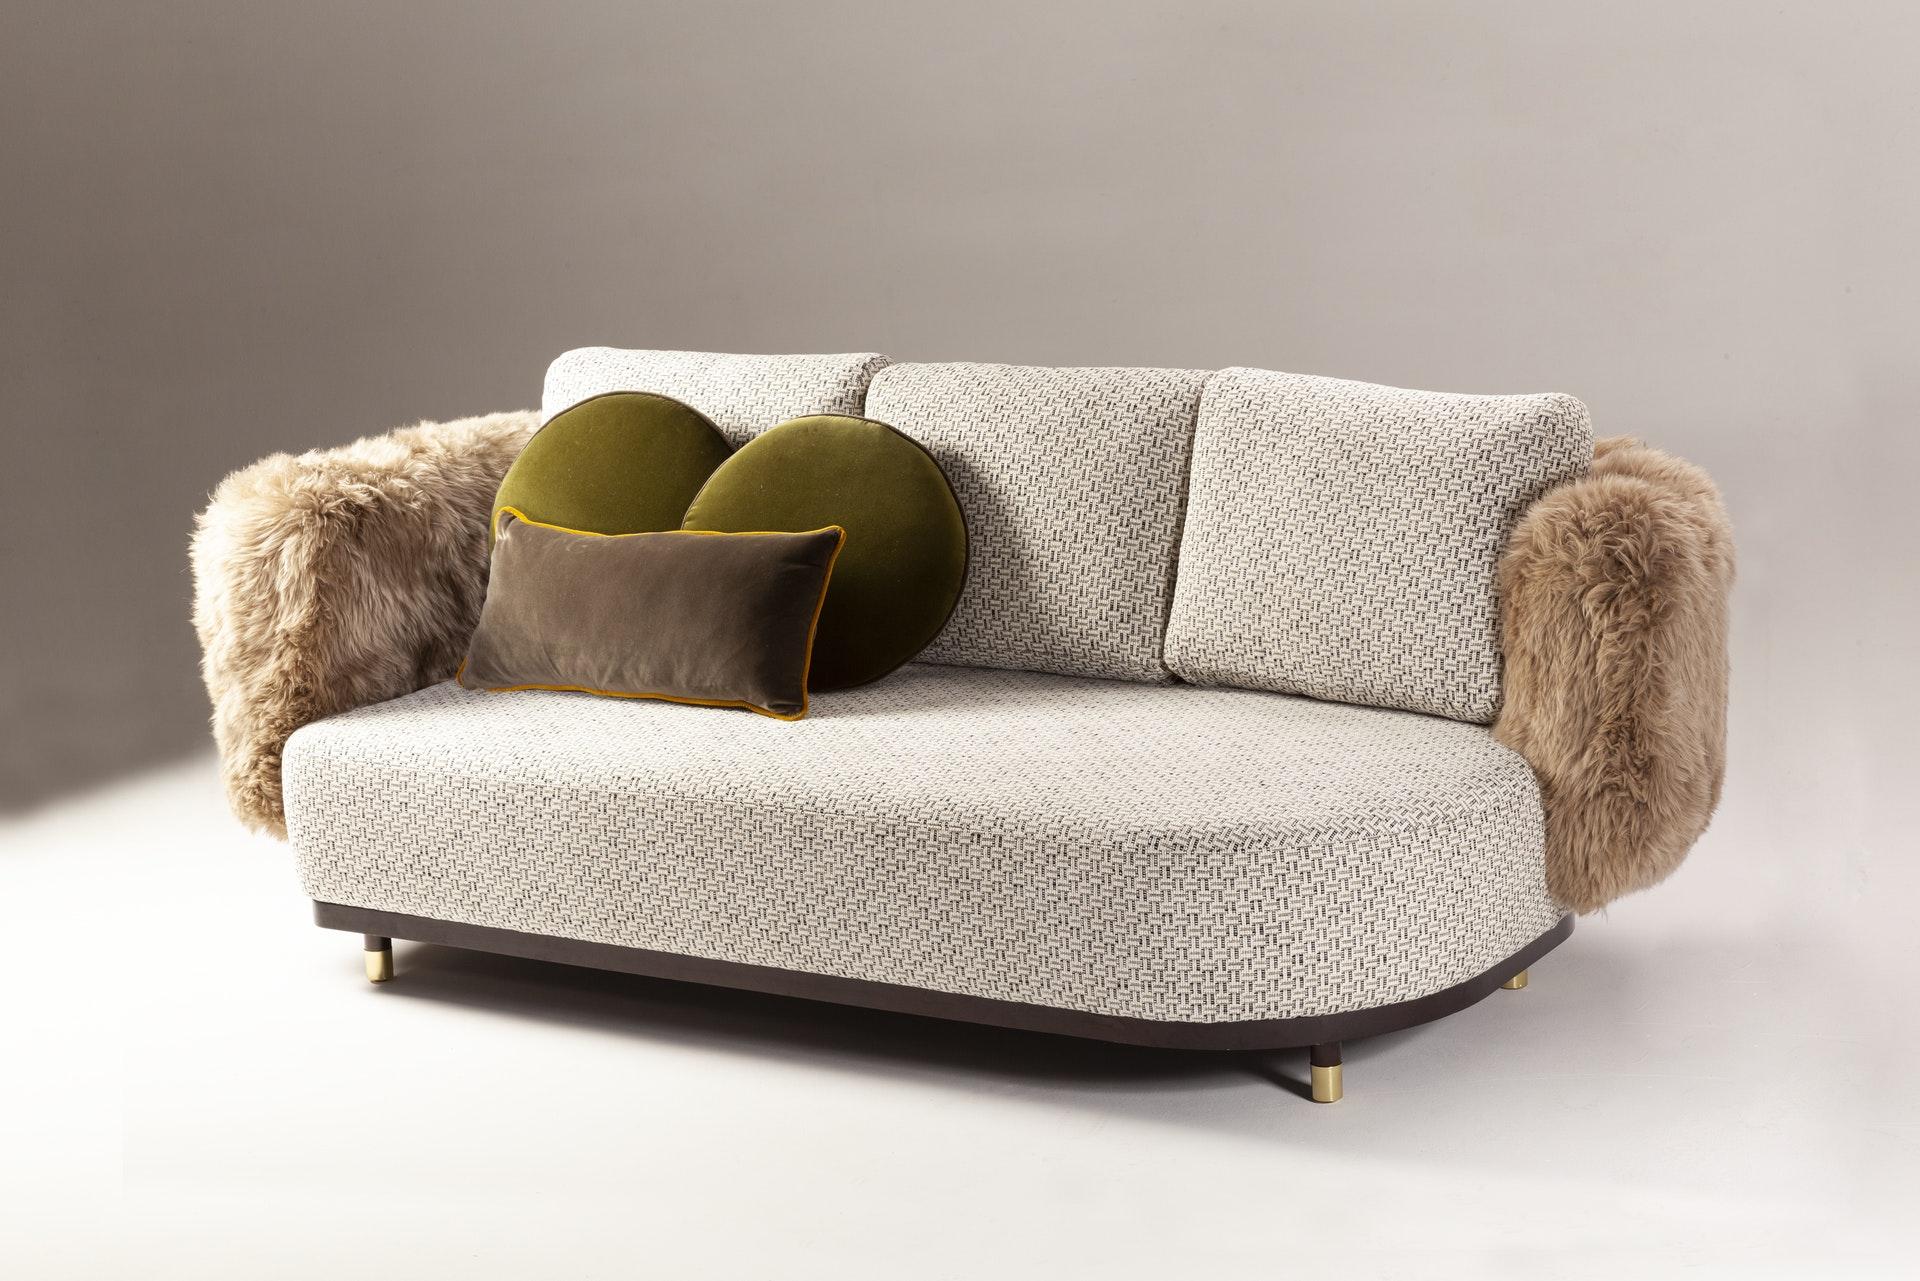 Couch für einen Mann 200 von Dooq
Maße: B 200 x T 105 x H 83 cm
MATERIALIEN: Polsterung und Keder aus Stoff oder Leder, Fransen.

DOOQ ist ein Designunternehmen, das den Luxus des Wohnens zelebriert. Wir entwerfen Designs, die die Sinne anregen